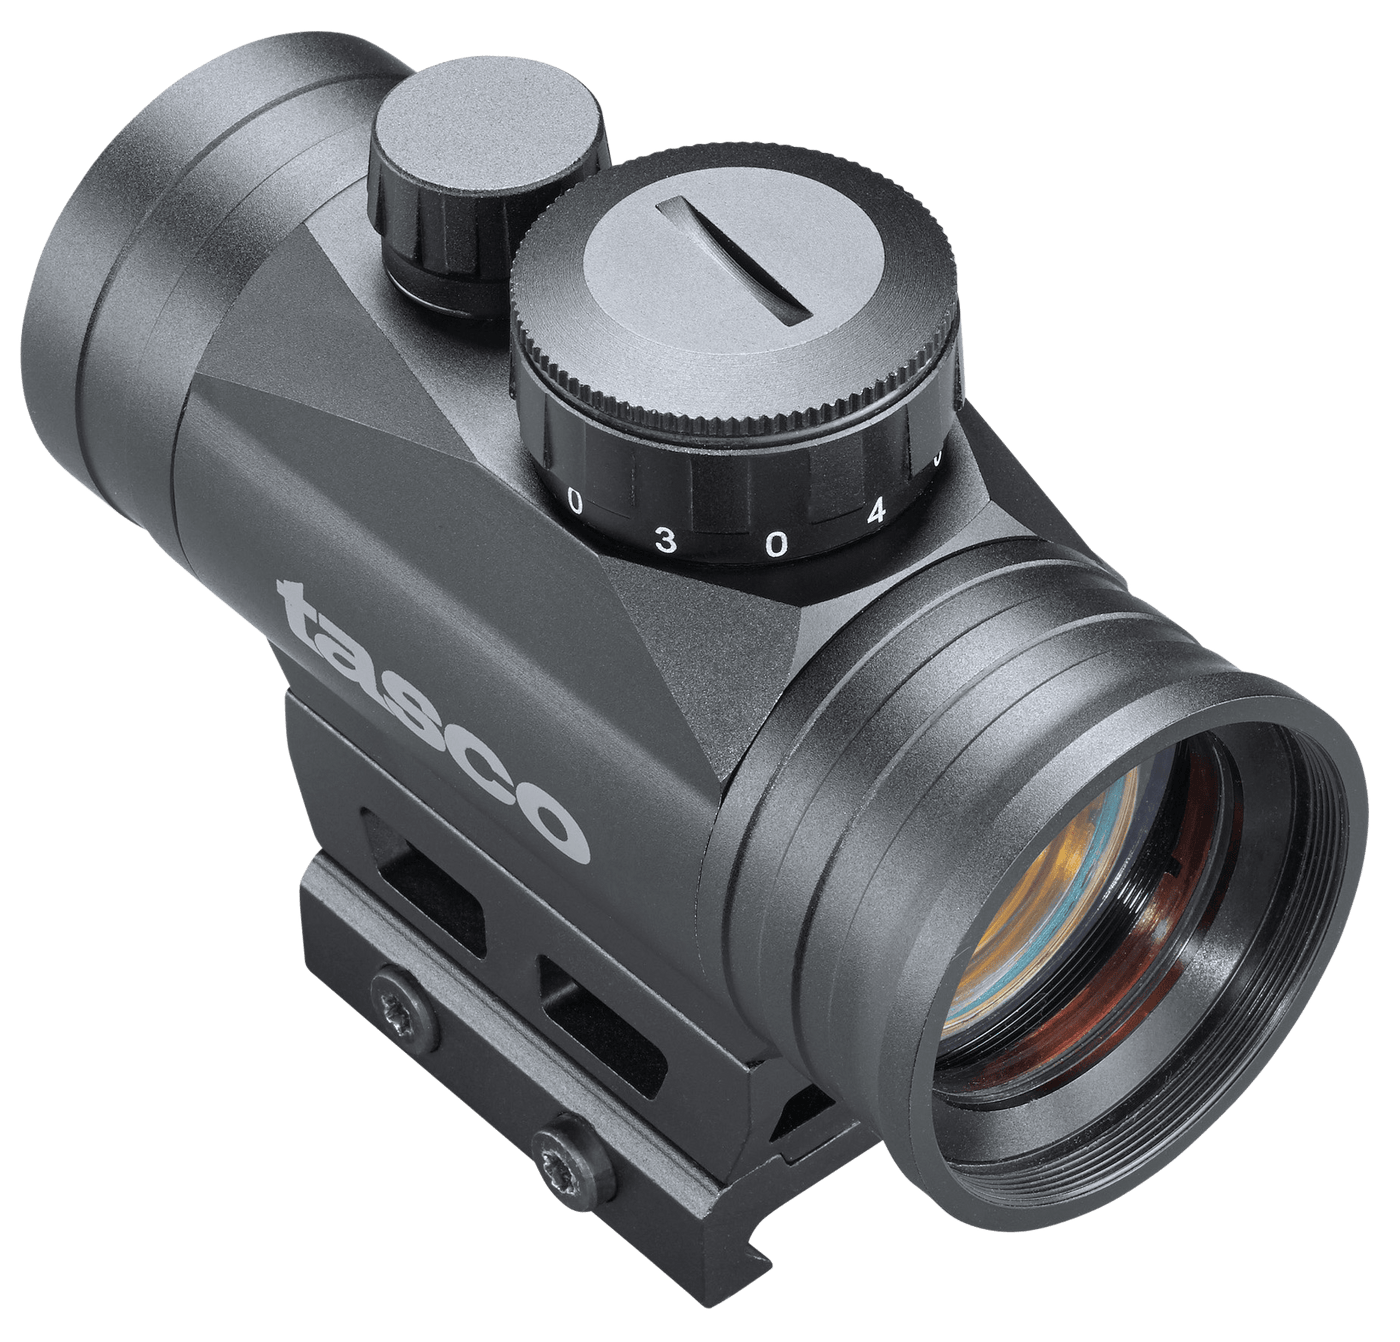 Tasco Tasco Propoint Reflex Sight Black 1x30 3moa Red Dot Optics